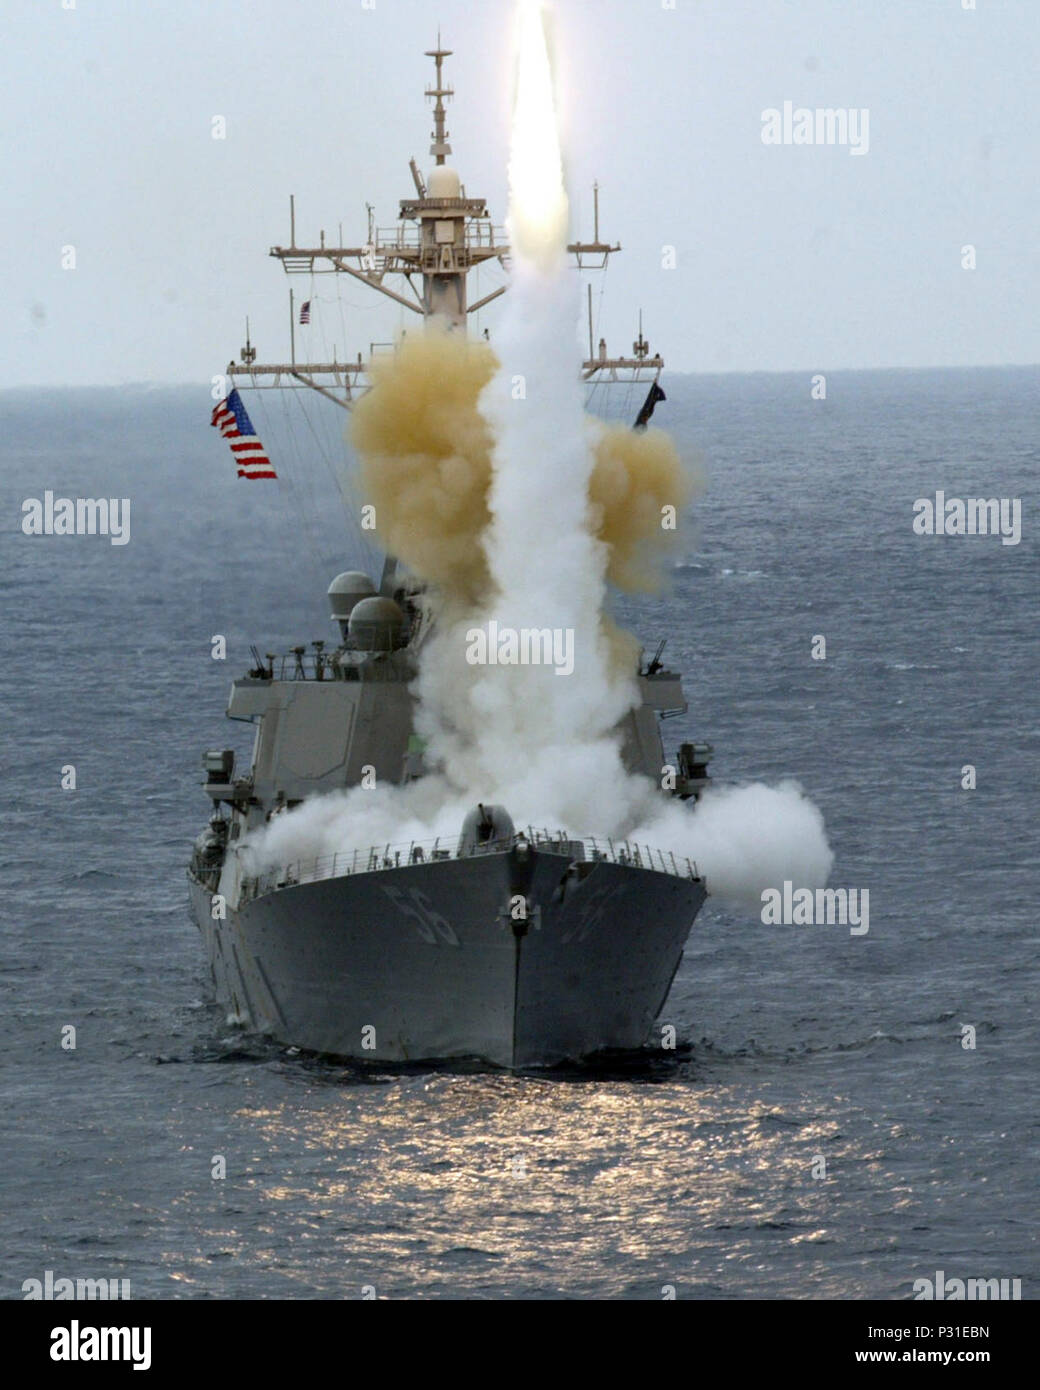 Meer an Bord USS John S. McCain (DDG56) Feb 6, 2004 - Lenkwaffen-zerstörer USS John S. McCain (DDG56) feuert eine RIM-7-Rakete während einer Übung. Die Marine verwendet den Sea Sparrow Version an Bord von Schiffen als Oberfläche-zu-Luft die Raketenabwehr Waffe. Der vielseitige Sparrow hat alle-Wetter, alle - Höhe der Funktionsfähigkeit und der CAN-high-performance Flugzeuge und Raketen aus jeder Richtung. Während der Übung, die Rakete abgefangen ein ferngesteuertes GPS-geführte Test drone. McCain und die Amphibious Assault ship USS Essex (LL 2) in die Rakete Tanne teilgenommen Stockfoto